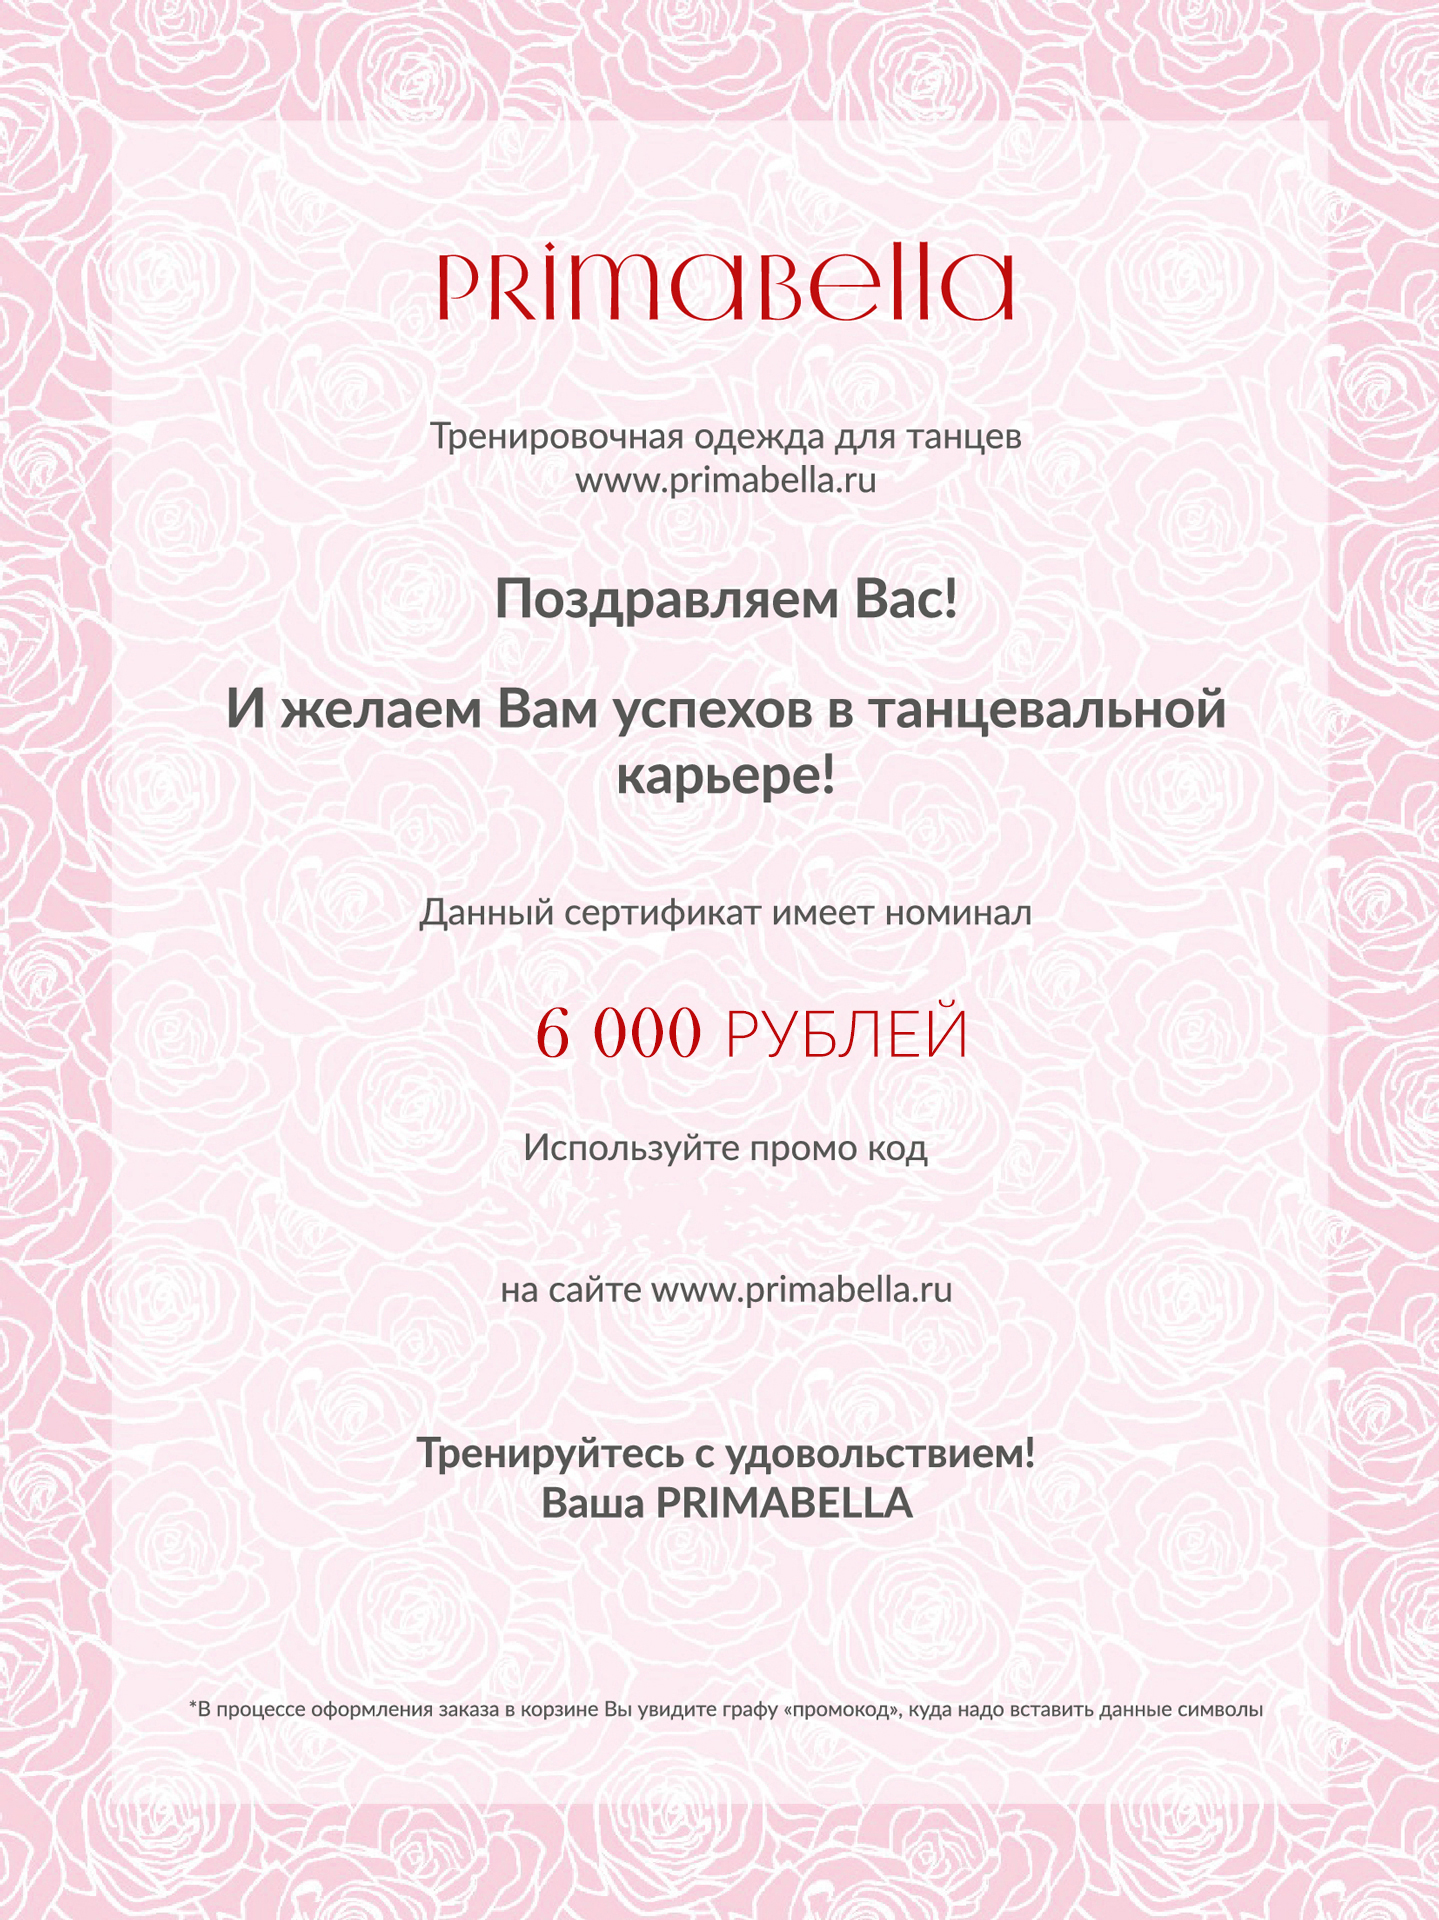 Подарочный сертификат 6000 руб для бальных танцев, цвет  